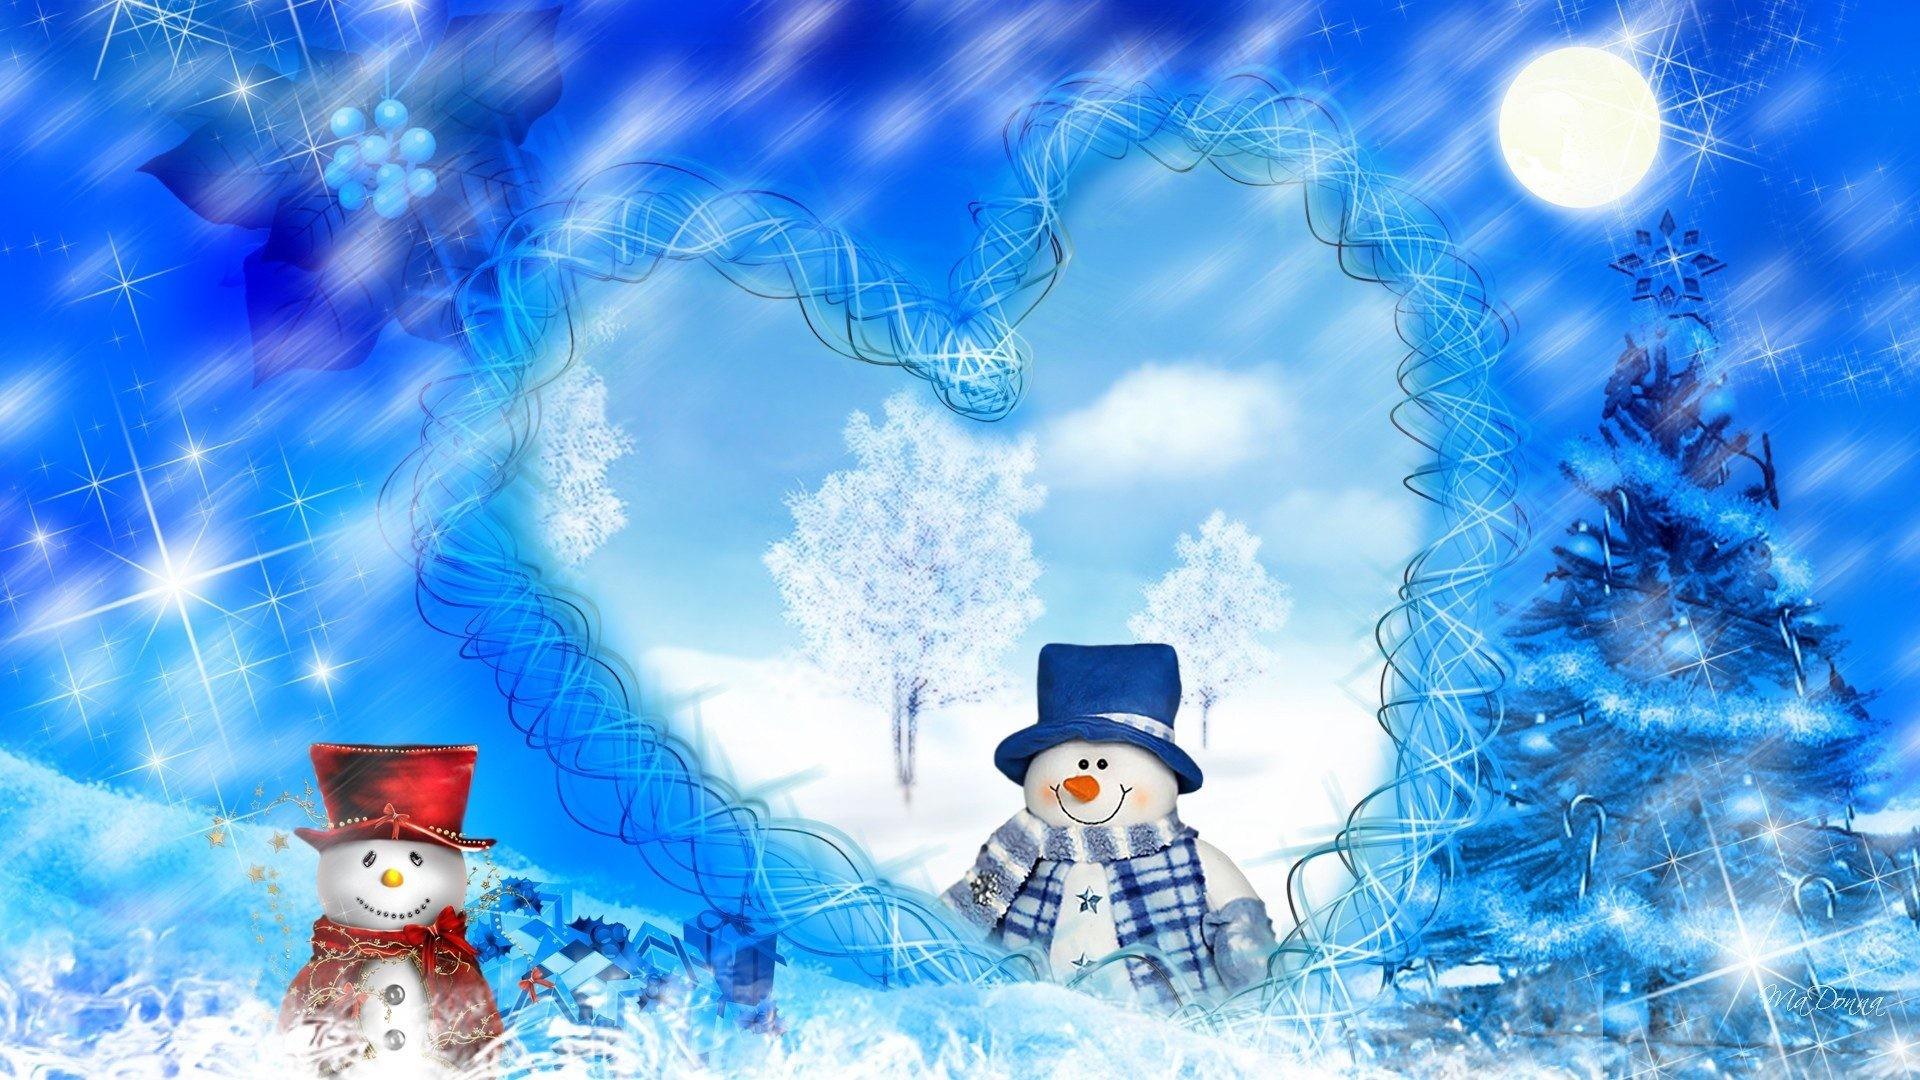 Winter Snowman Wallpaper